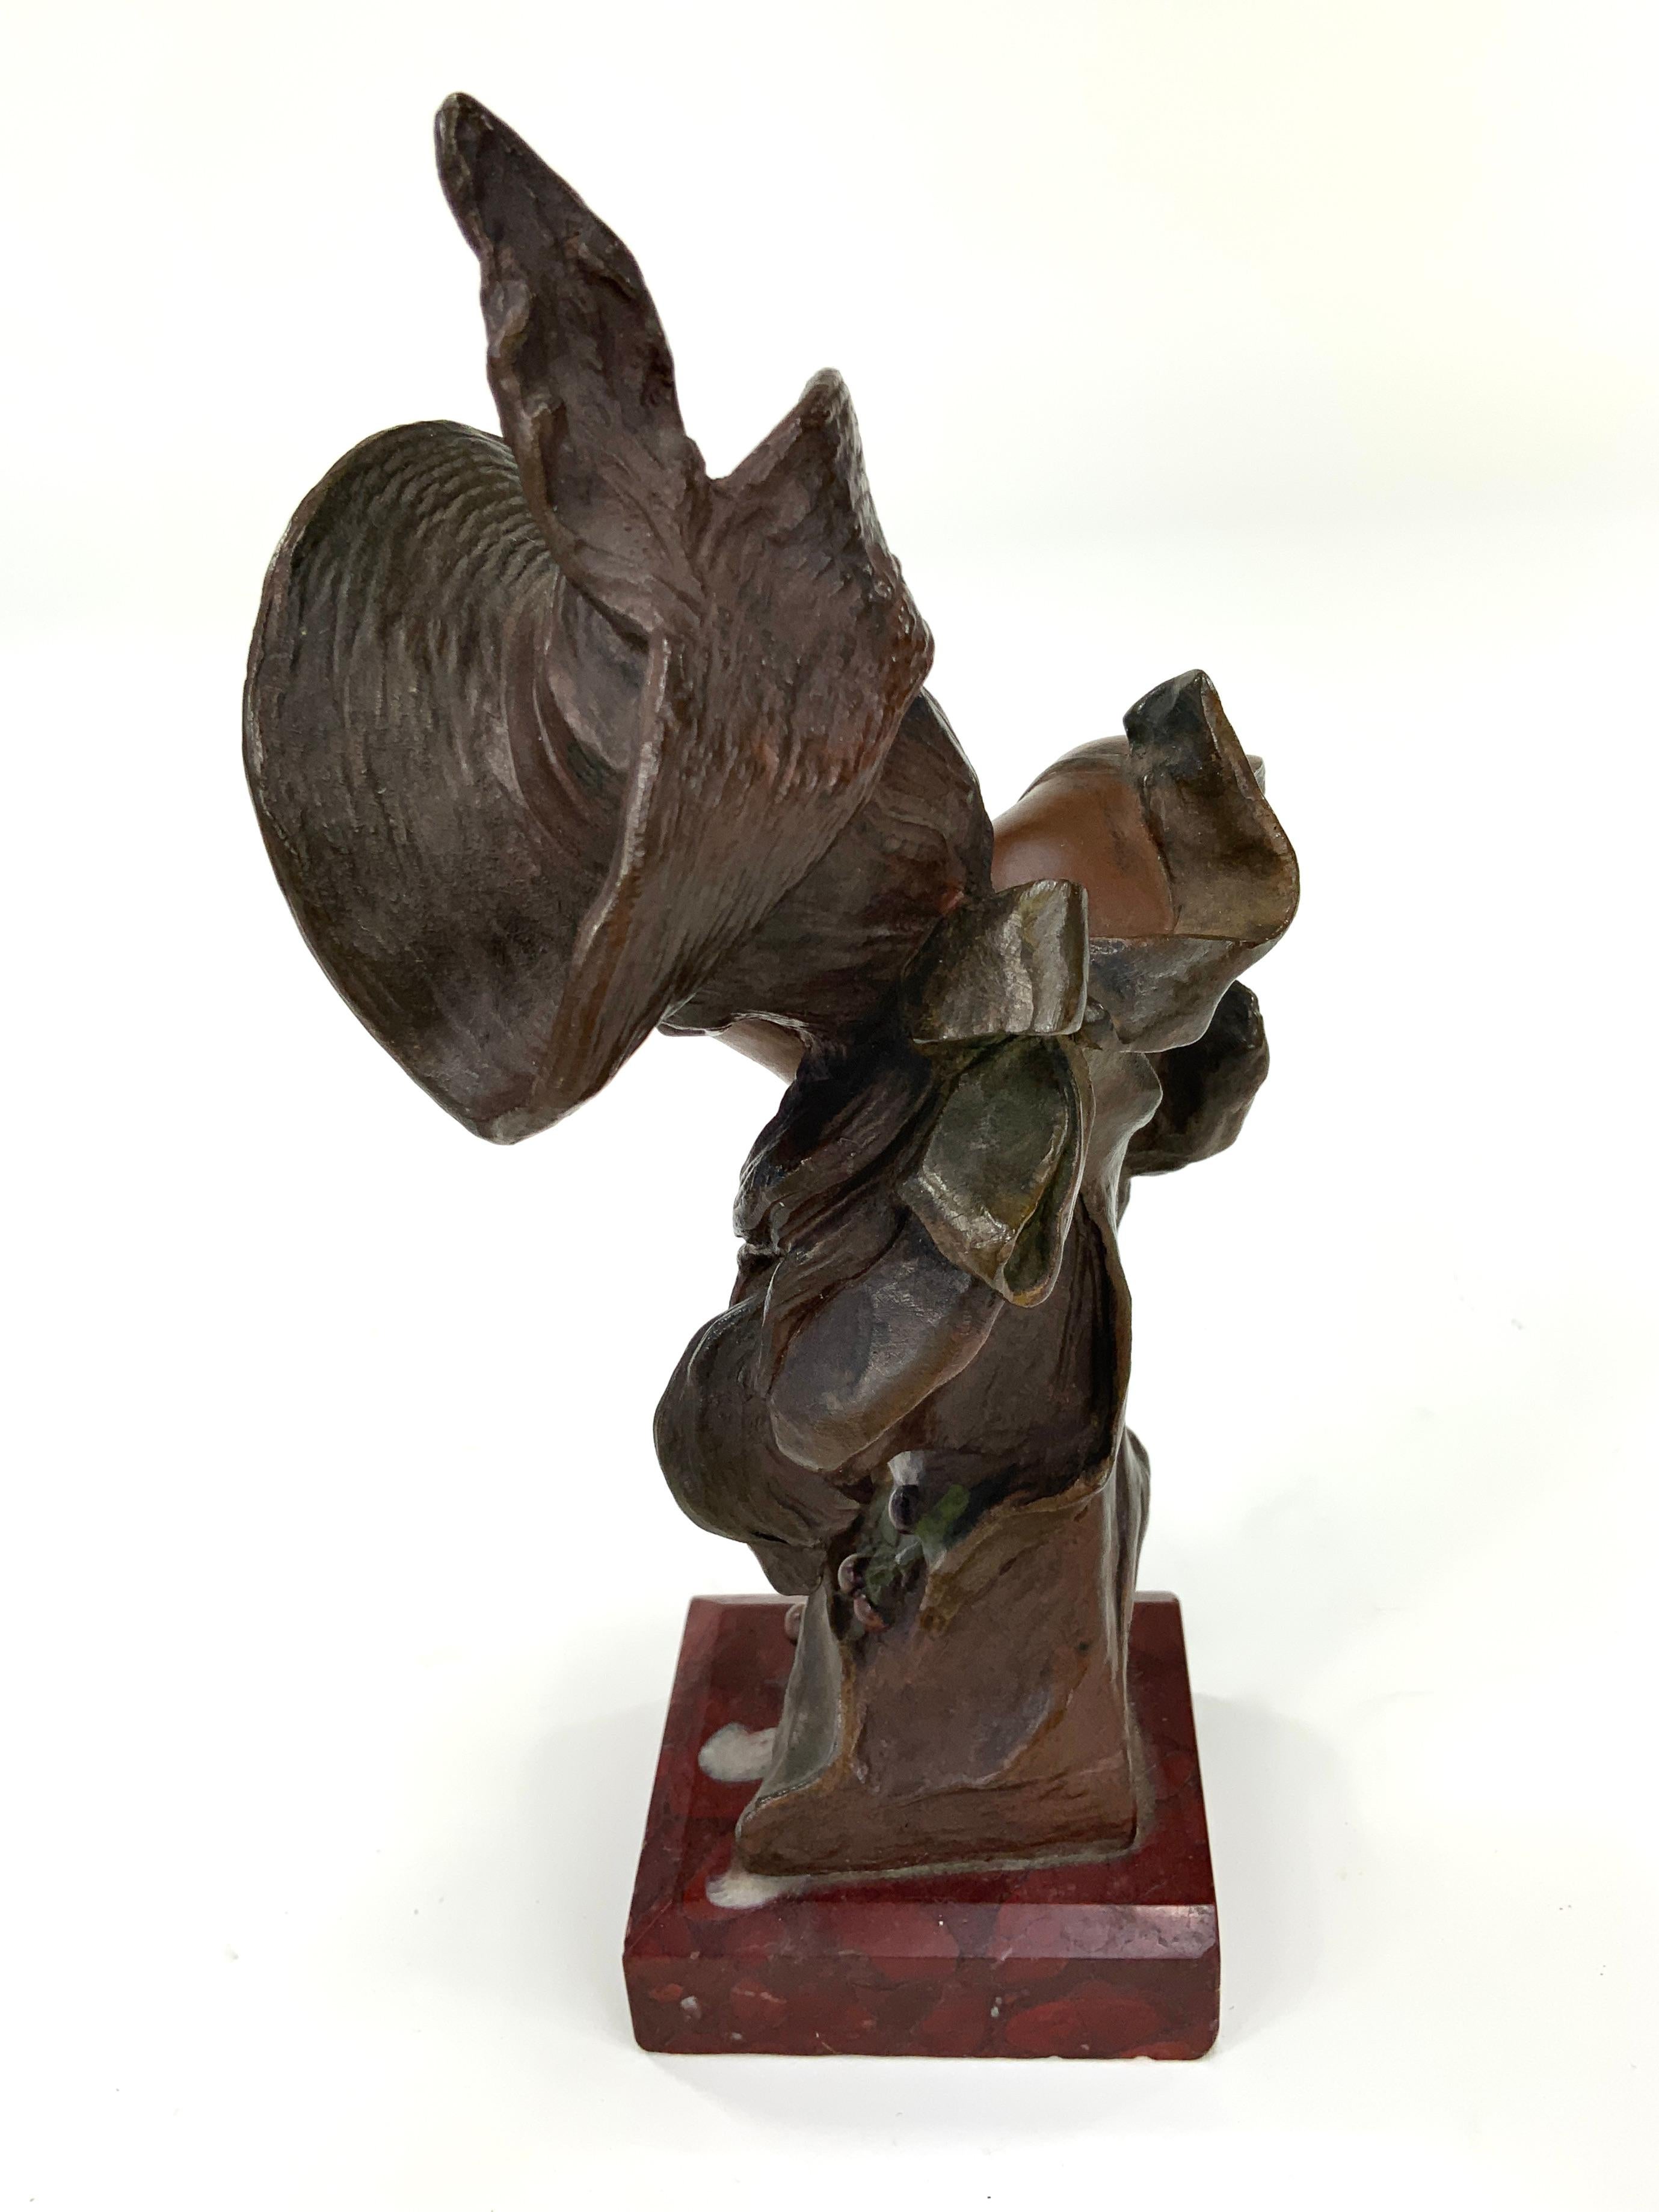 Georges Van Der Straeten (Belge, 1856-1941) a créé ce joli buste en bronze représentant une jeune femme tenant deux cerises entre ses dents. Il est en excellent état et ne présente aucun dommage visible sur le bronze. 

Il repose sur une base en